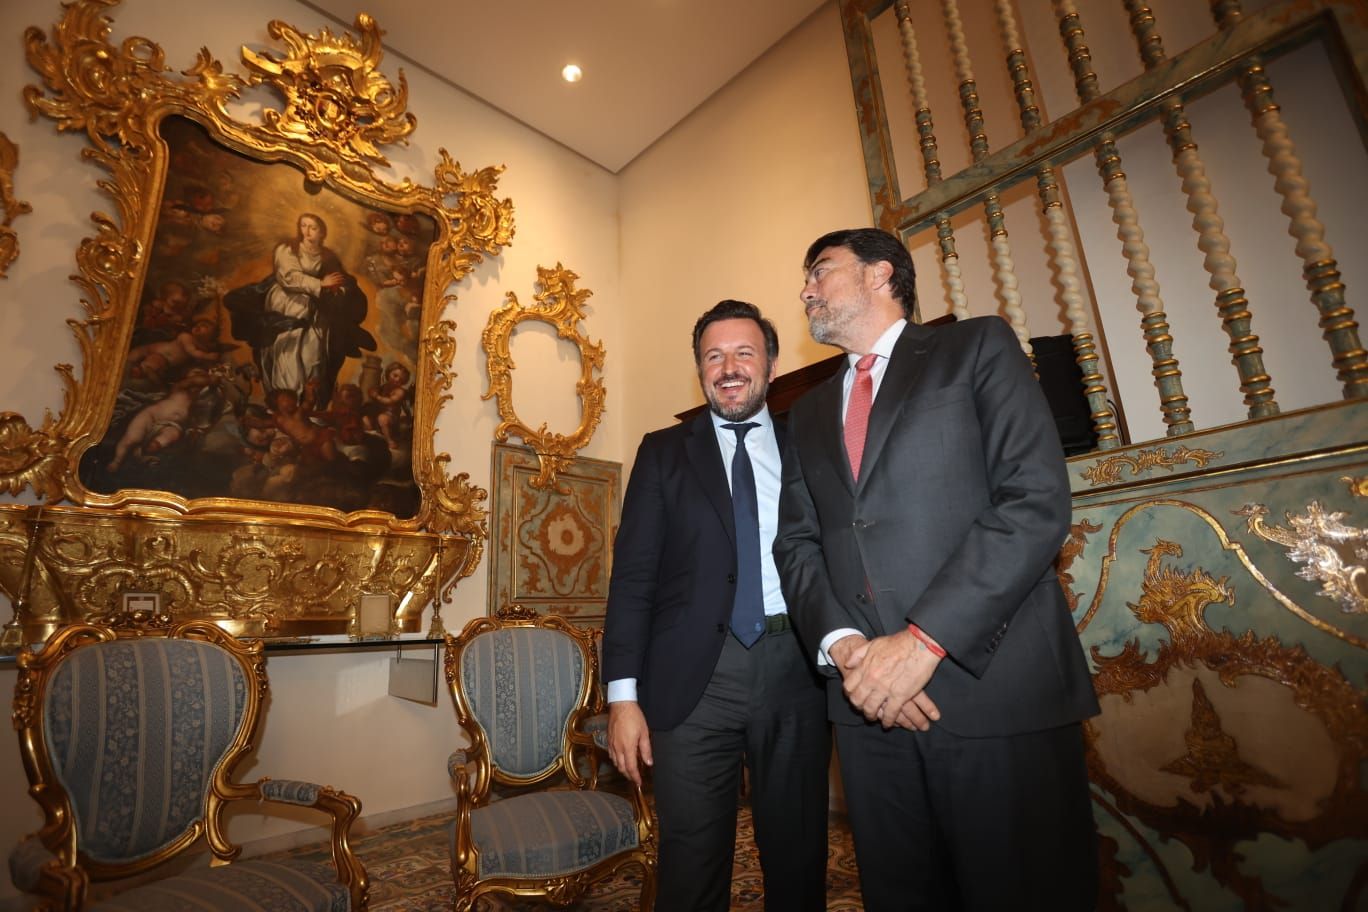 Las fotos de la "cumbre histórica" de los alcaldes de Alicante y Elche